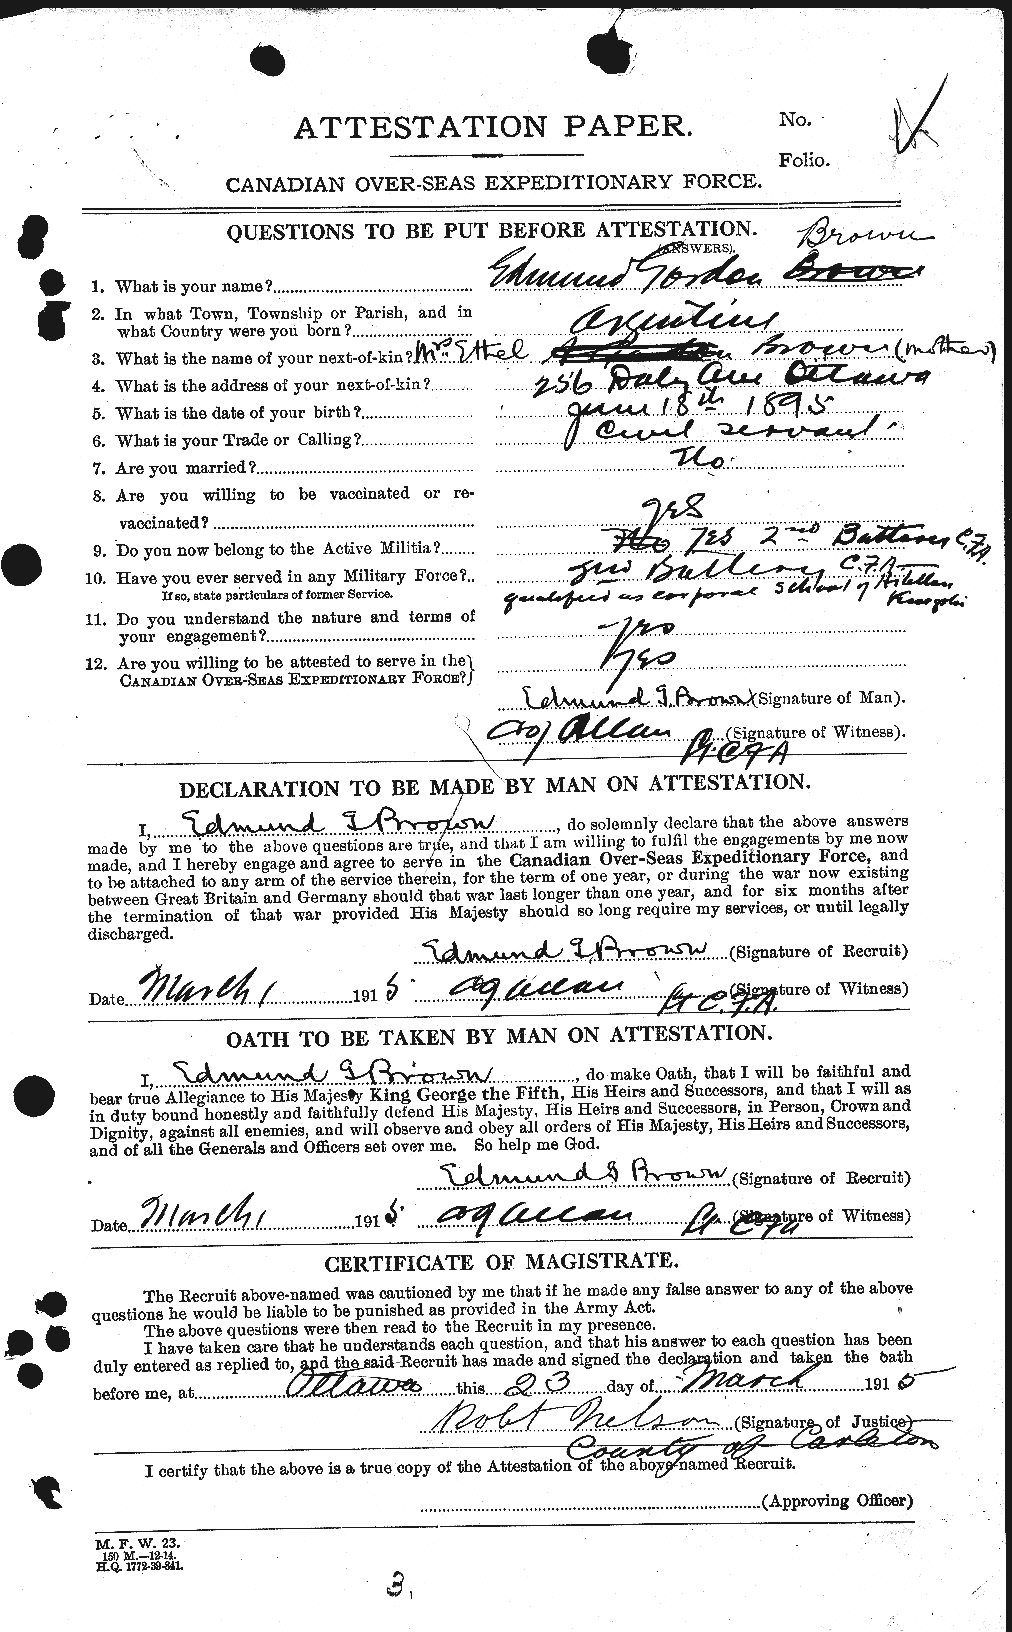 Dossiers du Personnel de la Première Guerre mondiale - CEC 263329a